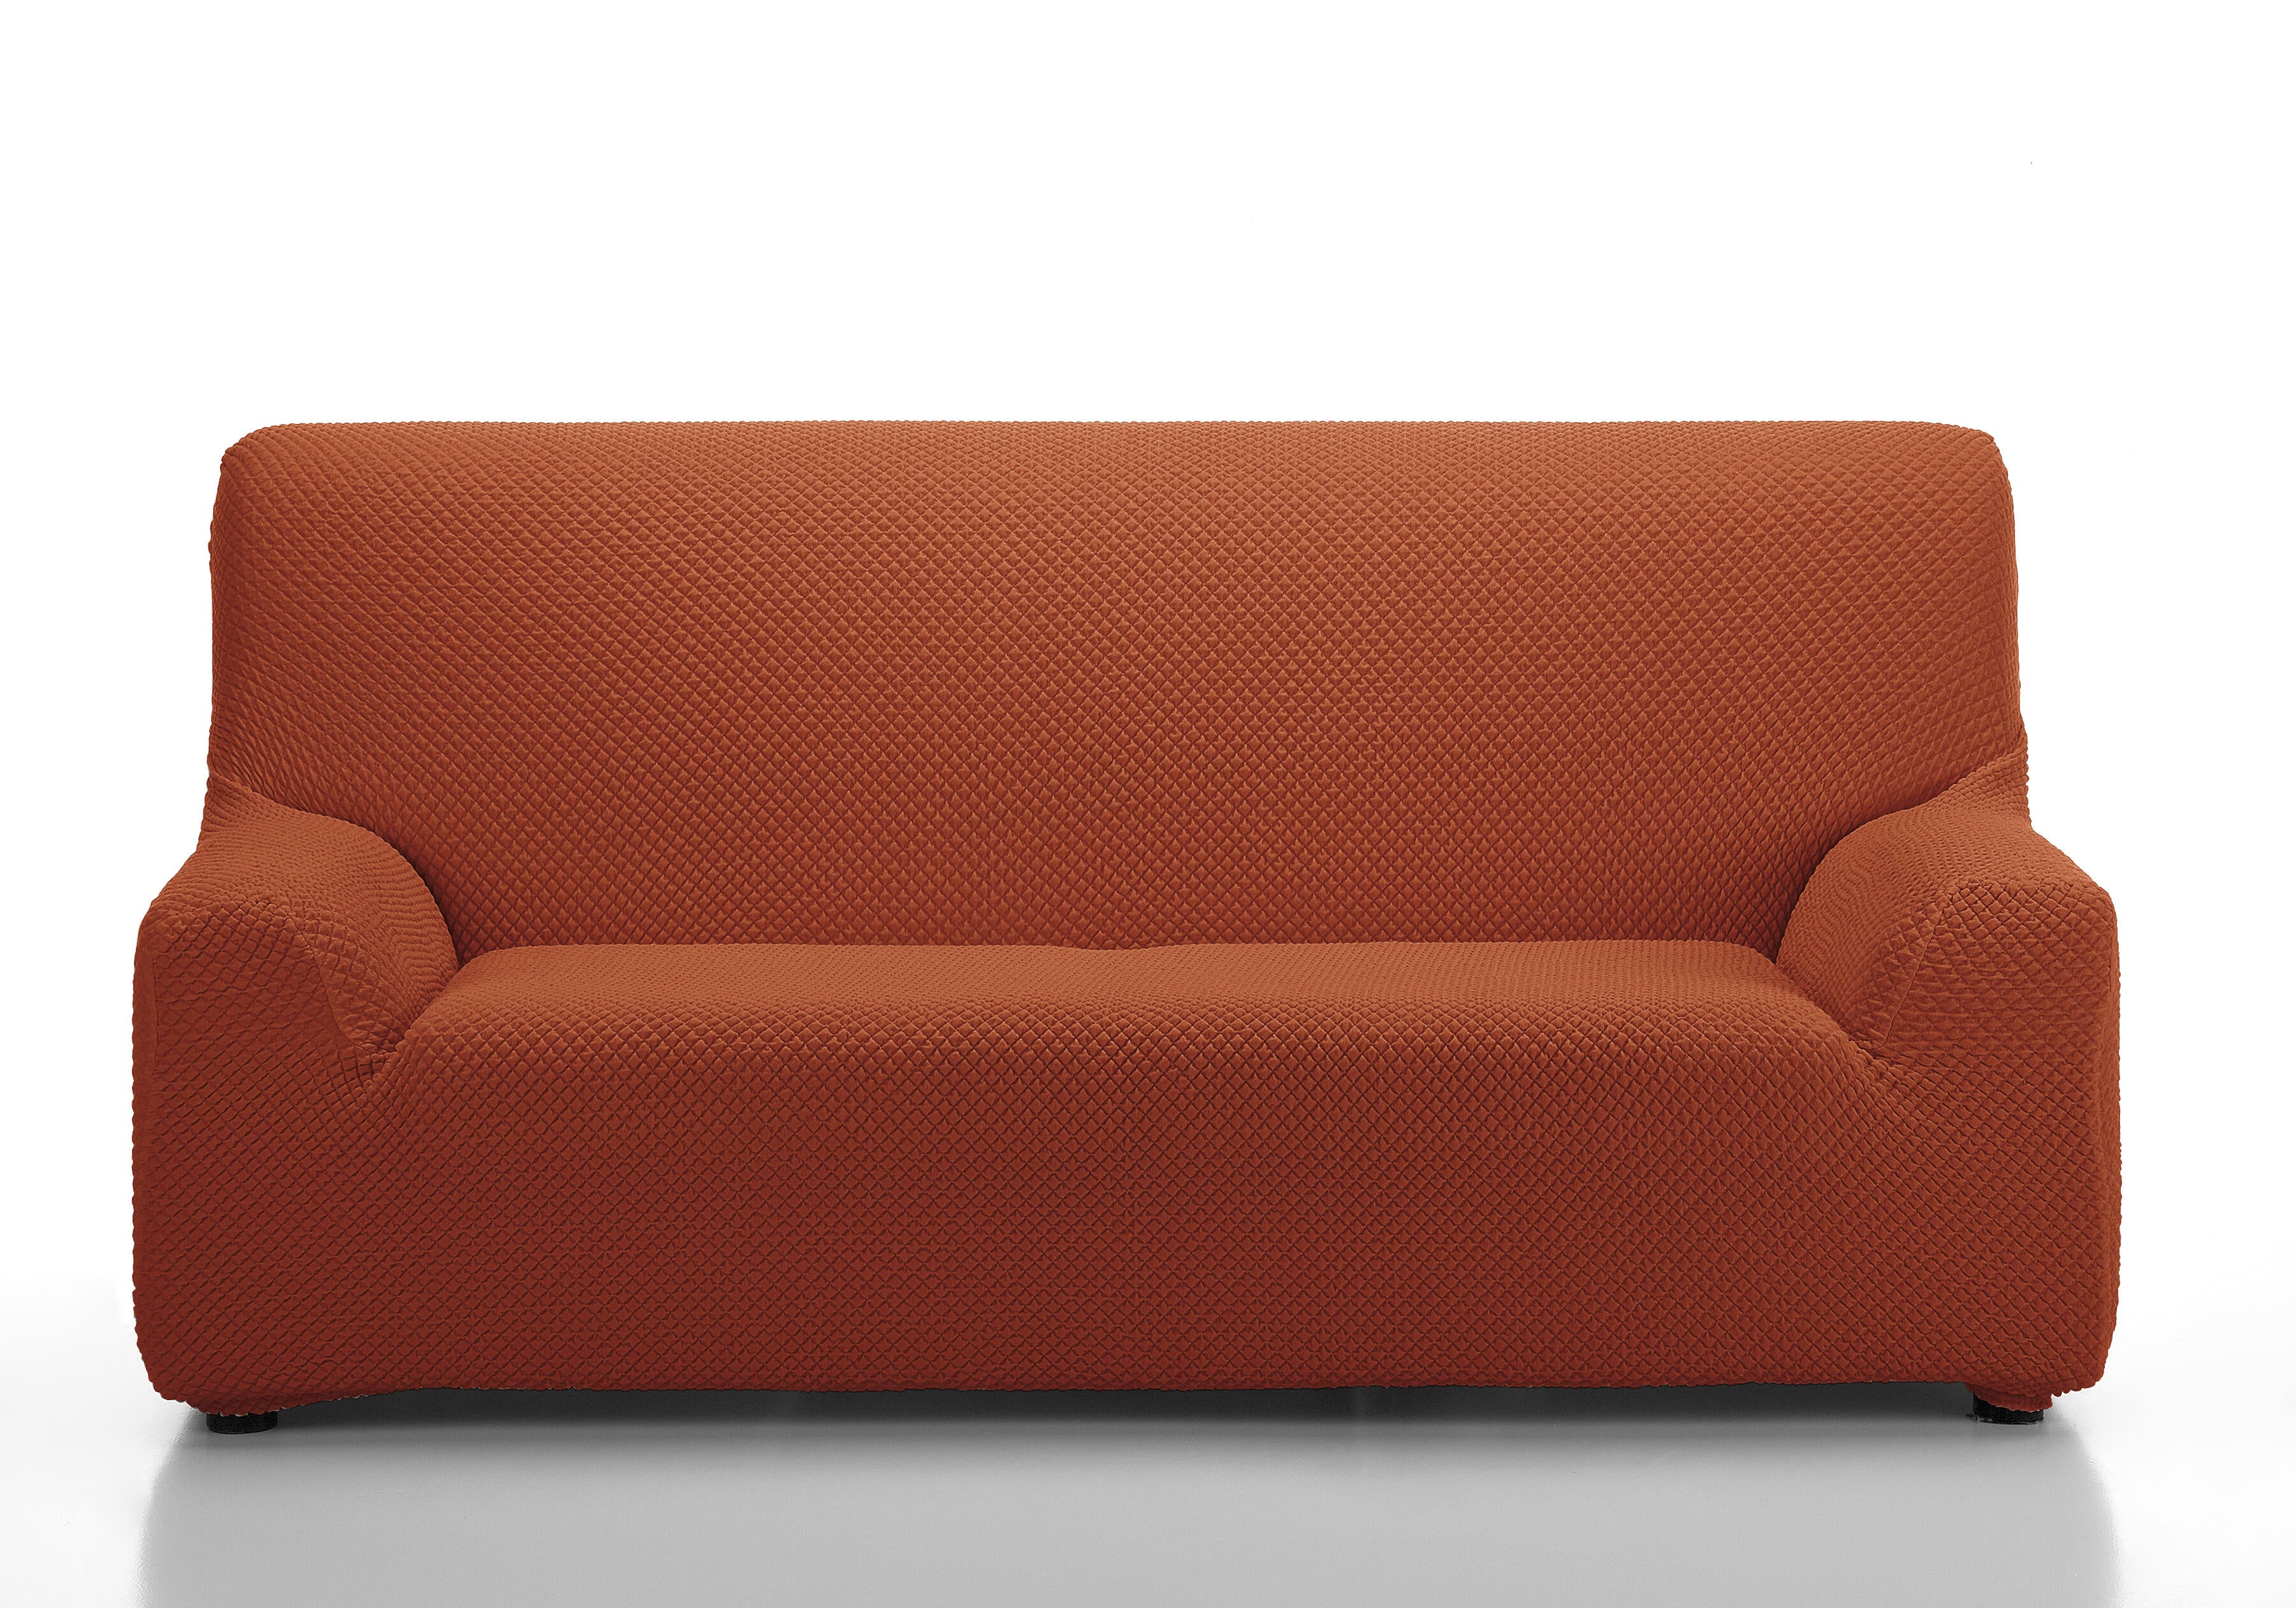 Funda sofá elástica erik naranja 2 plazas